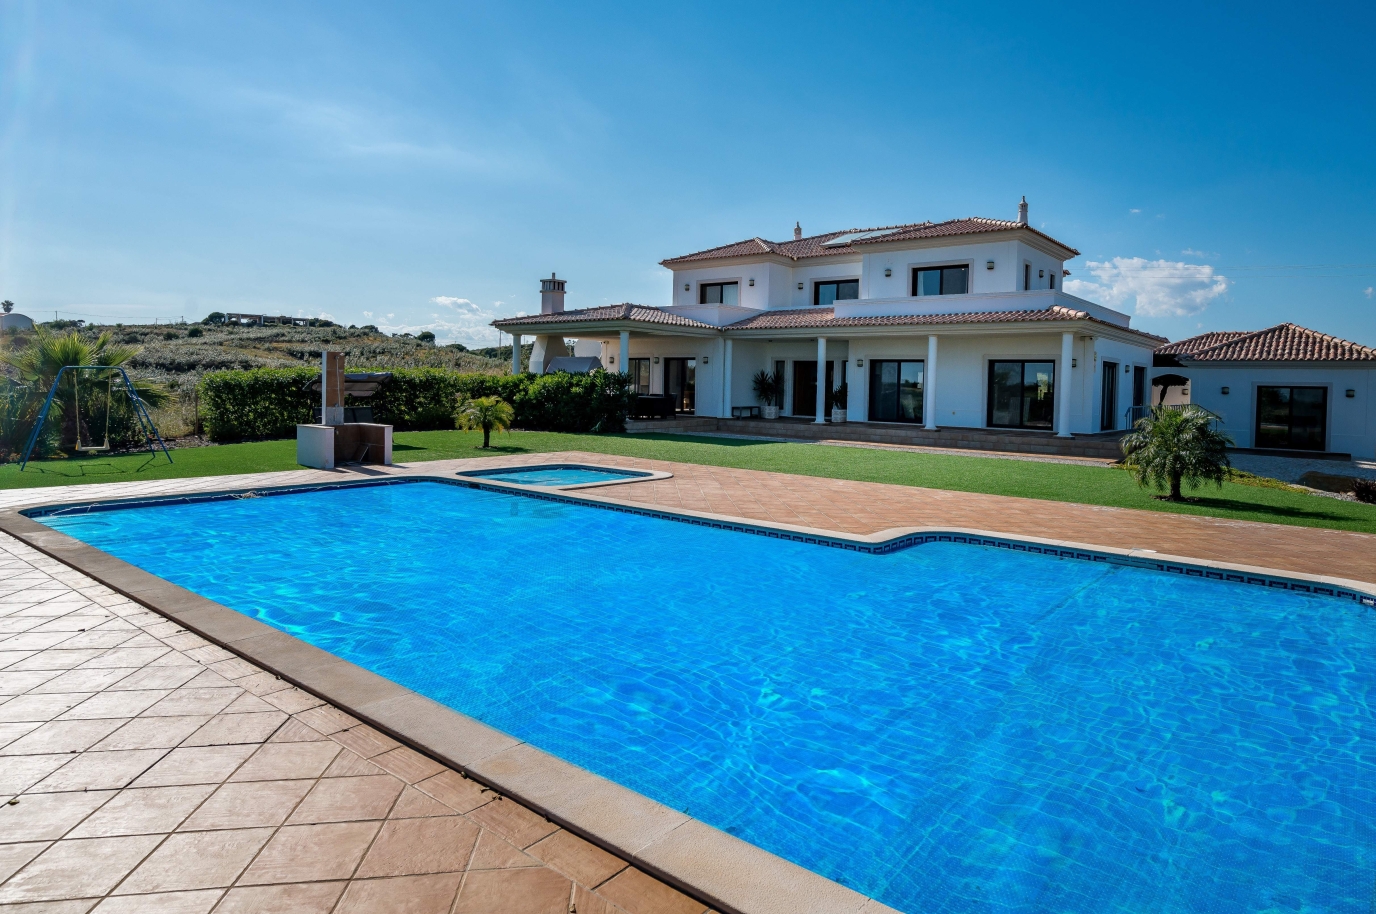 Venda de moradia com piscina e jardim, em Vila Nova de Cacela, Algarve_139480